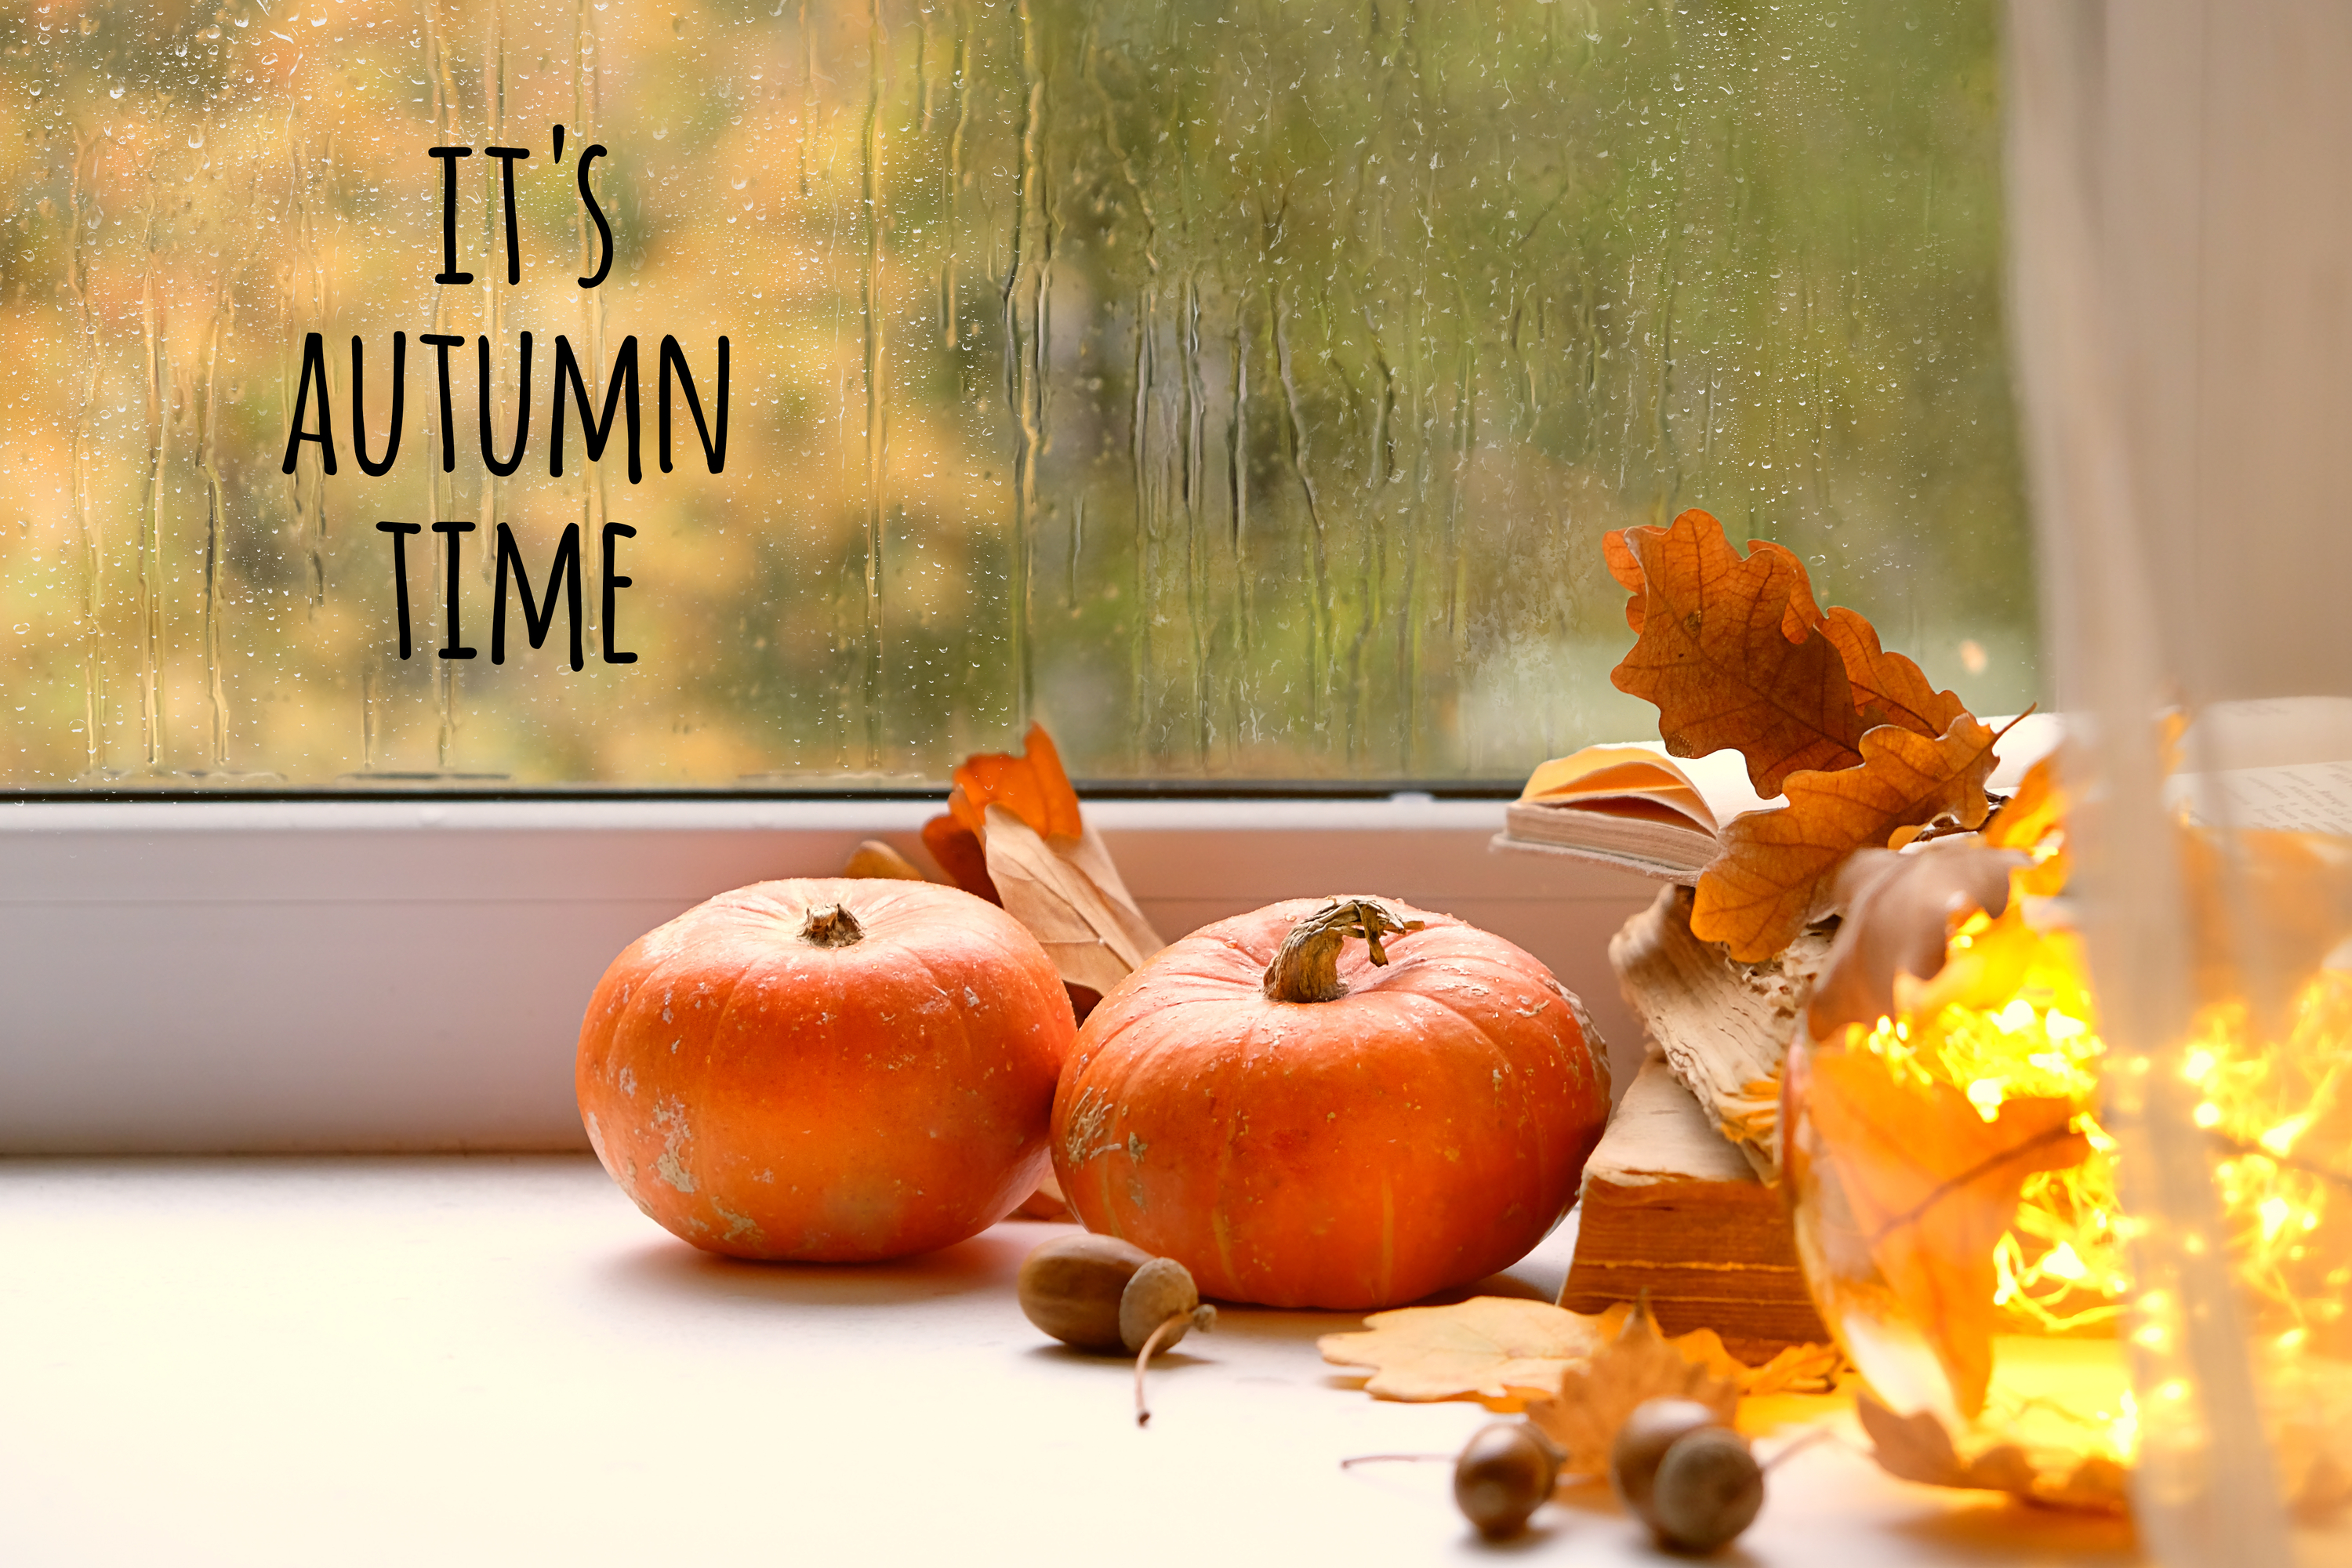 window decor | fall decor | fall window decor | decor | fall | window | fall window | home decor | fall home decor 